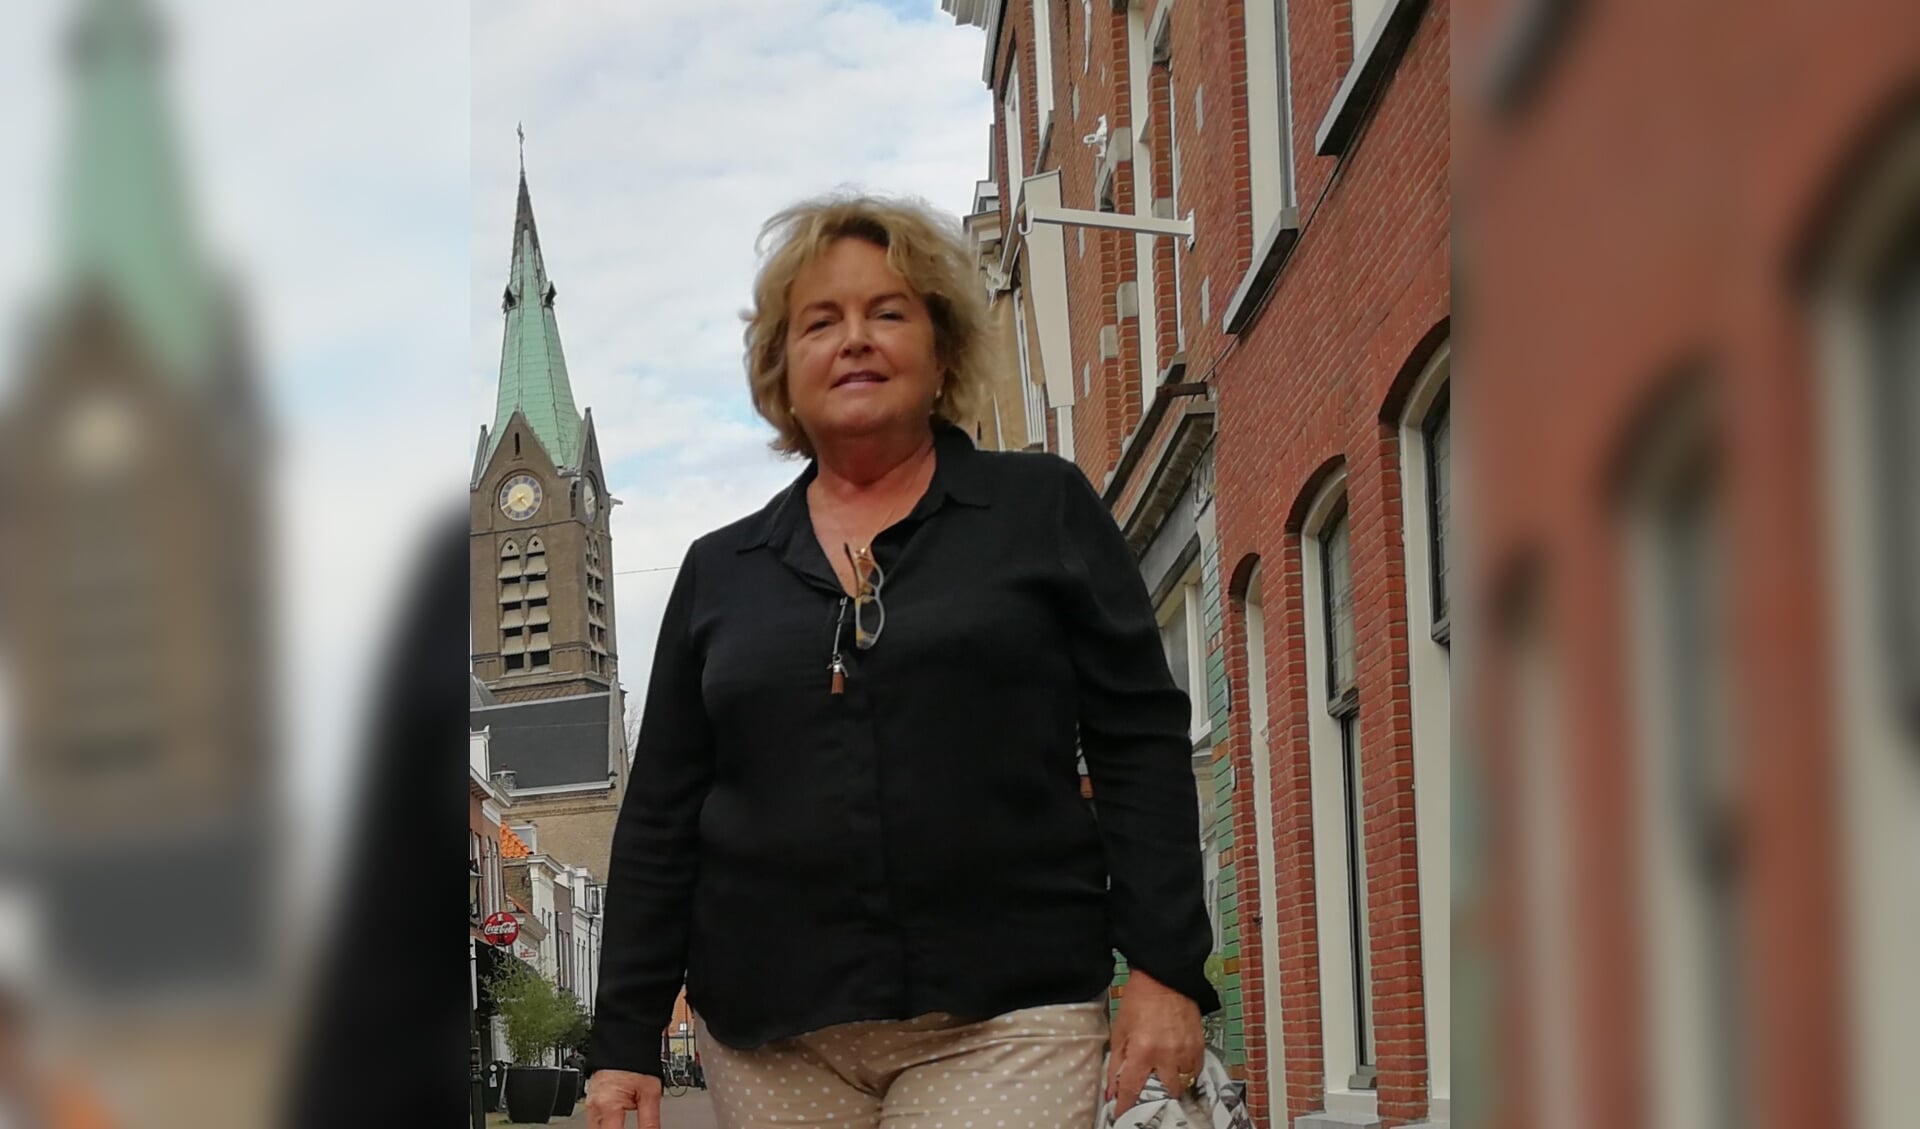 De motie van wantrouwen tegen het college van burgemeester en wethouders van raadslid Vera Kalf van StadsBelangen Vlaardingen kreeg in een tumultueuze raadsvergadering geen meerderheid.